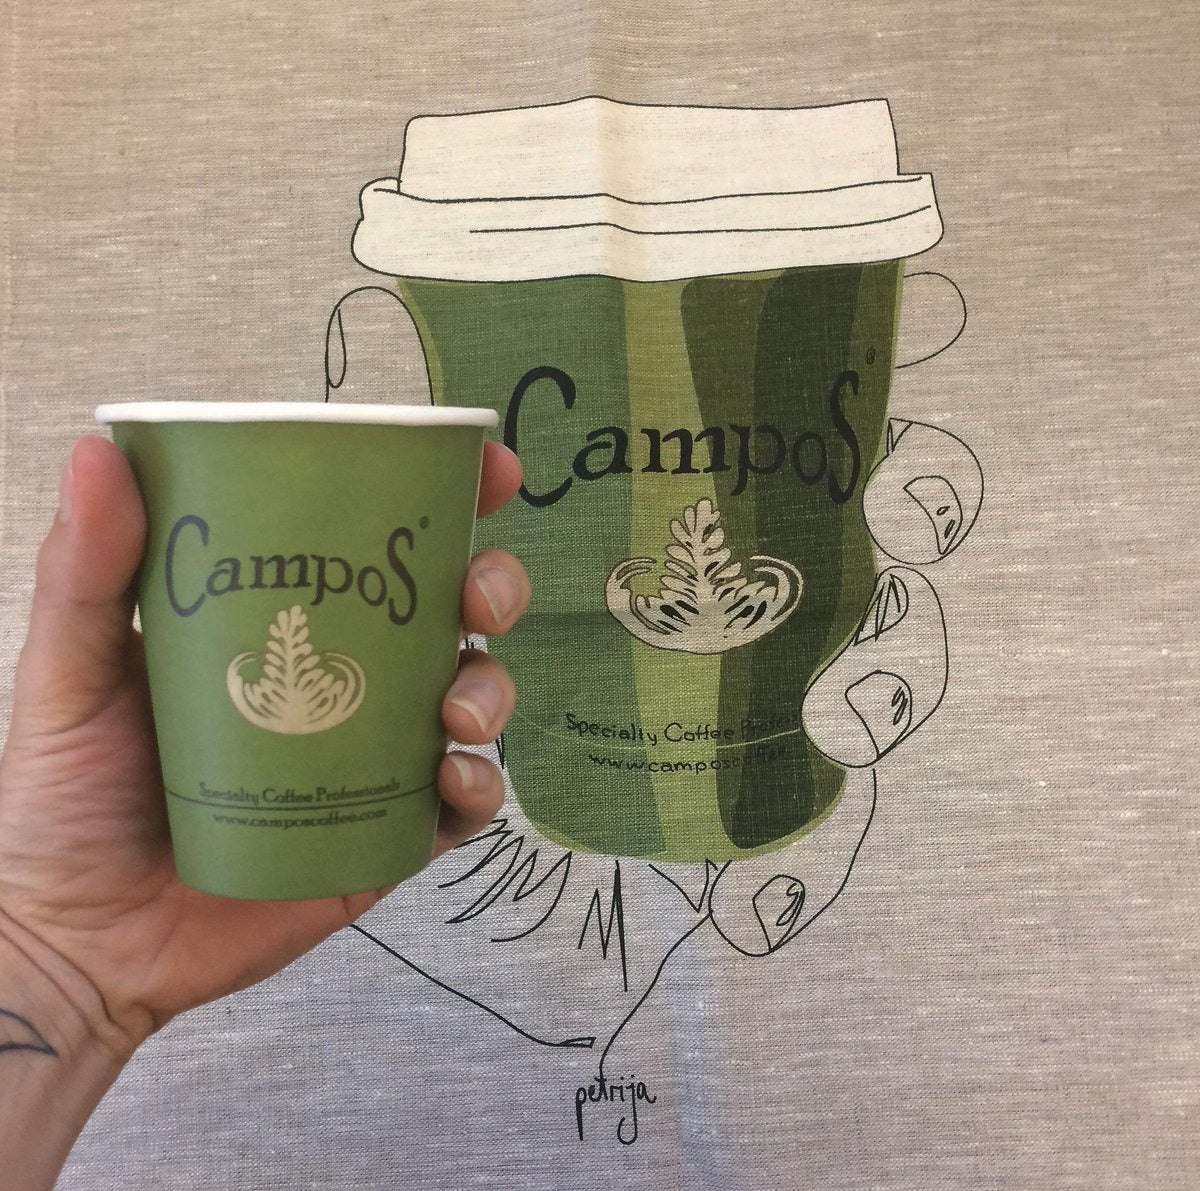 澳洲品牌Campos superior blend 咖啡豆 500g - 約12月底到貨